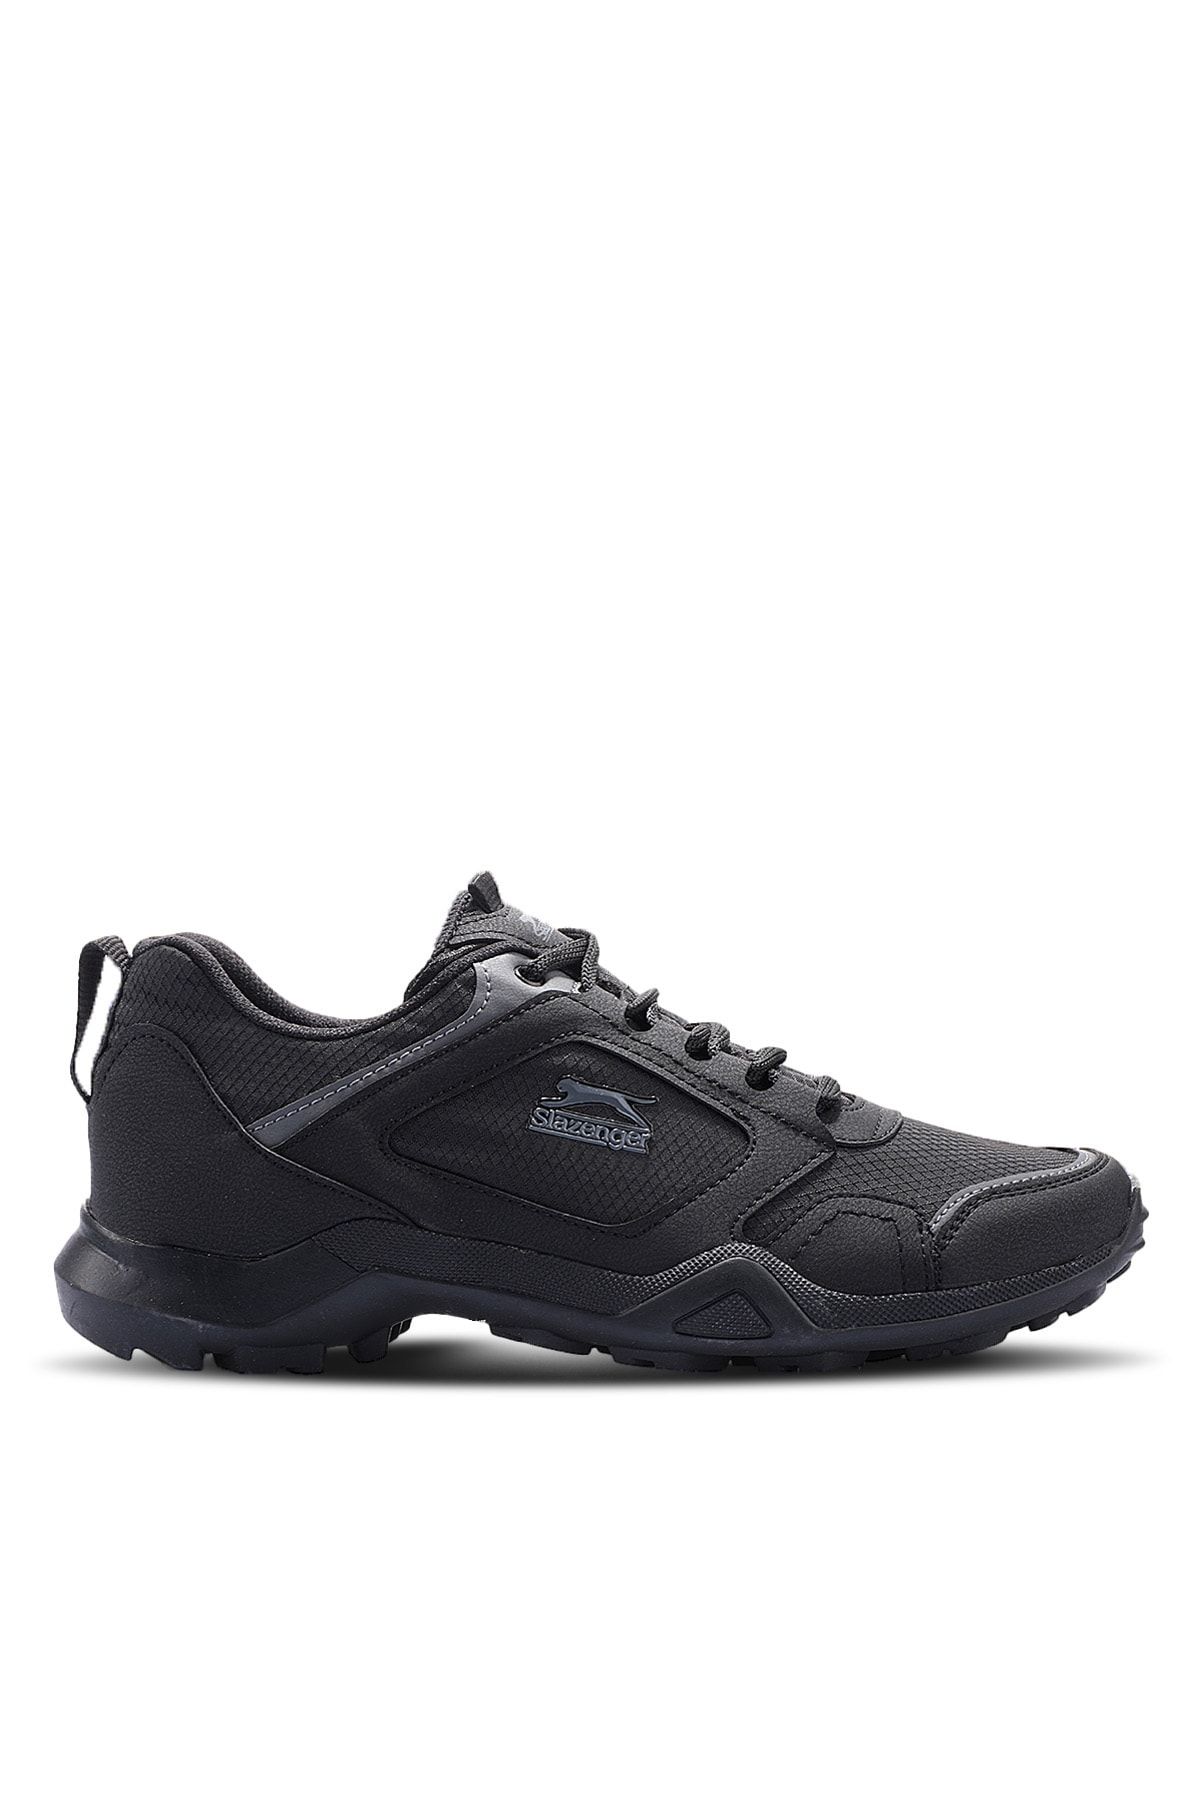 Slazenger Atlanta Sneaker Erkek Ayakkabı Siyah / Koyu Gri